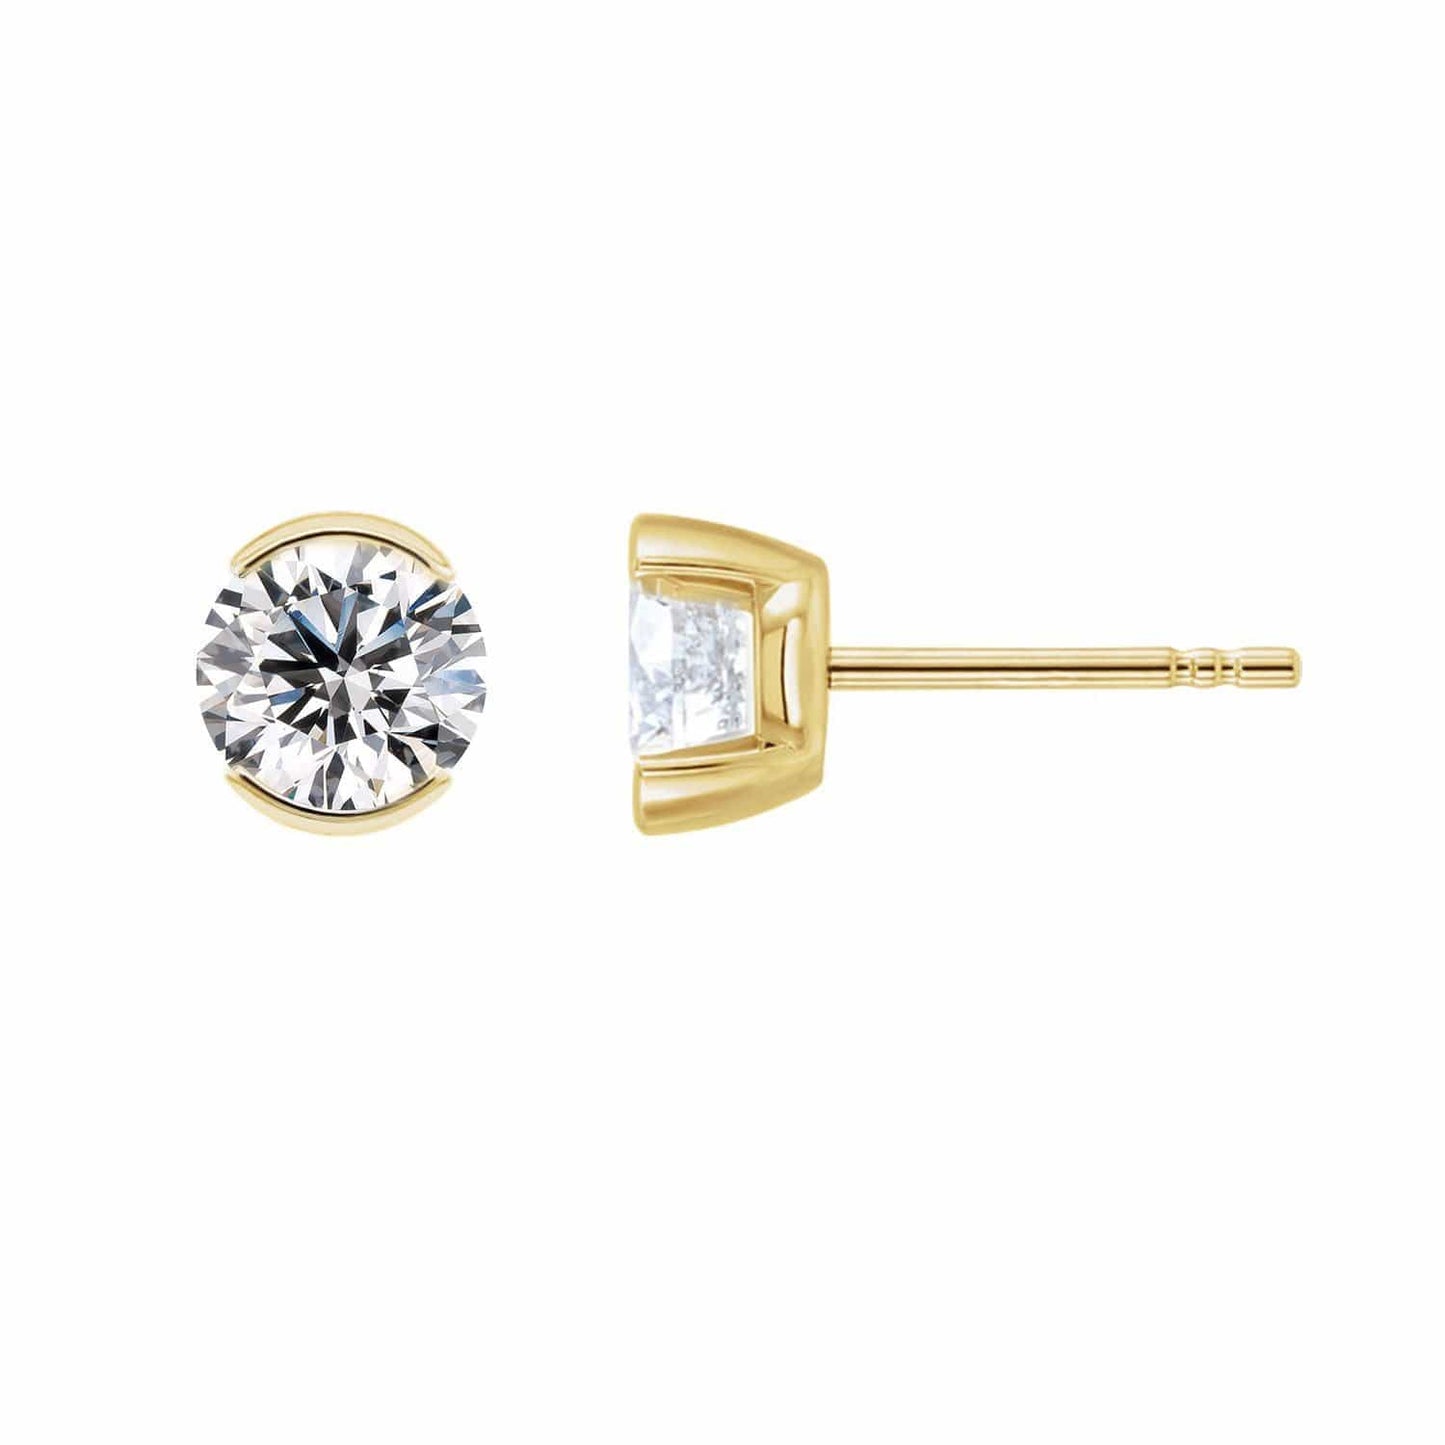 White Sapphire 14k Gold Half Bezel Stud Earrings Earrings by Nodeform